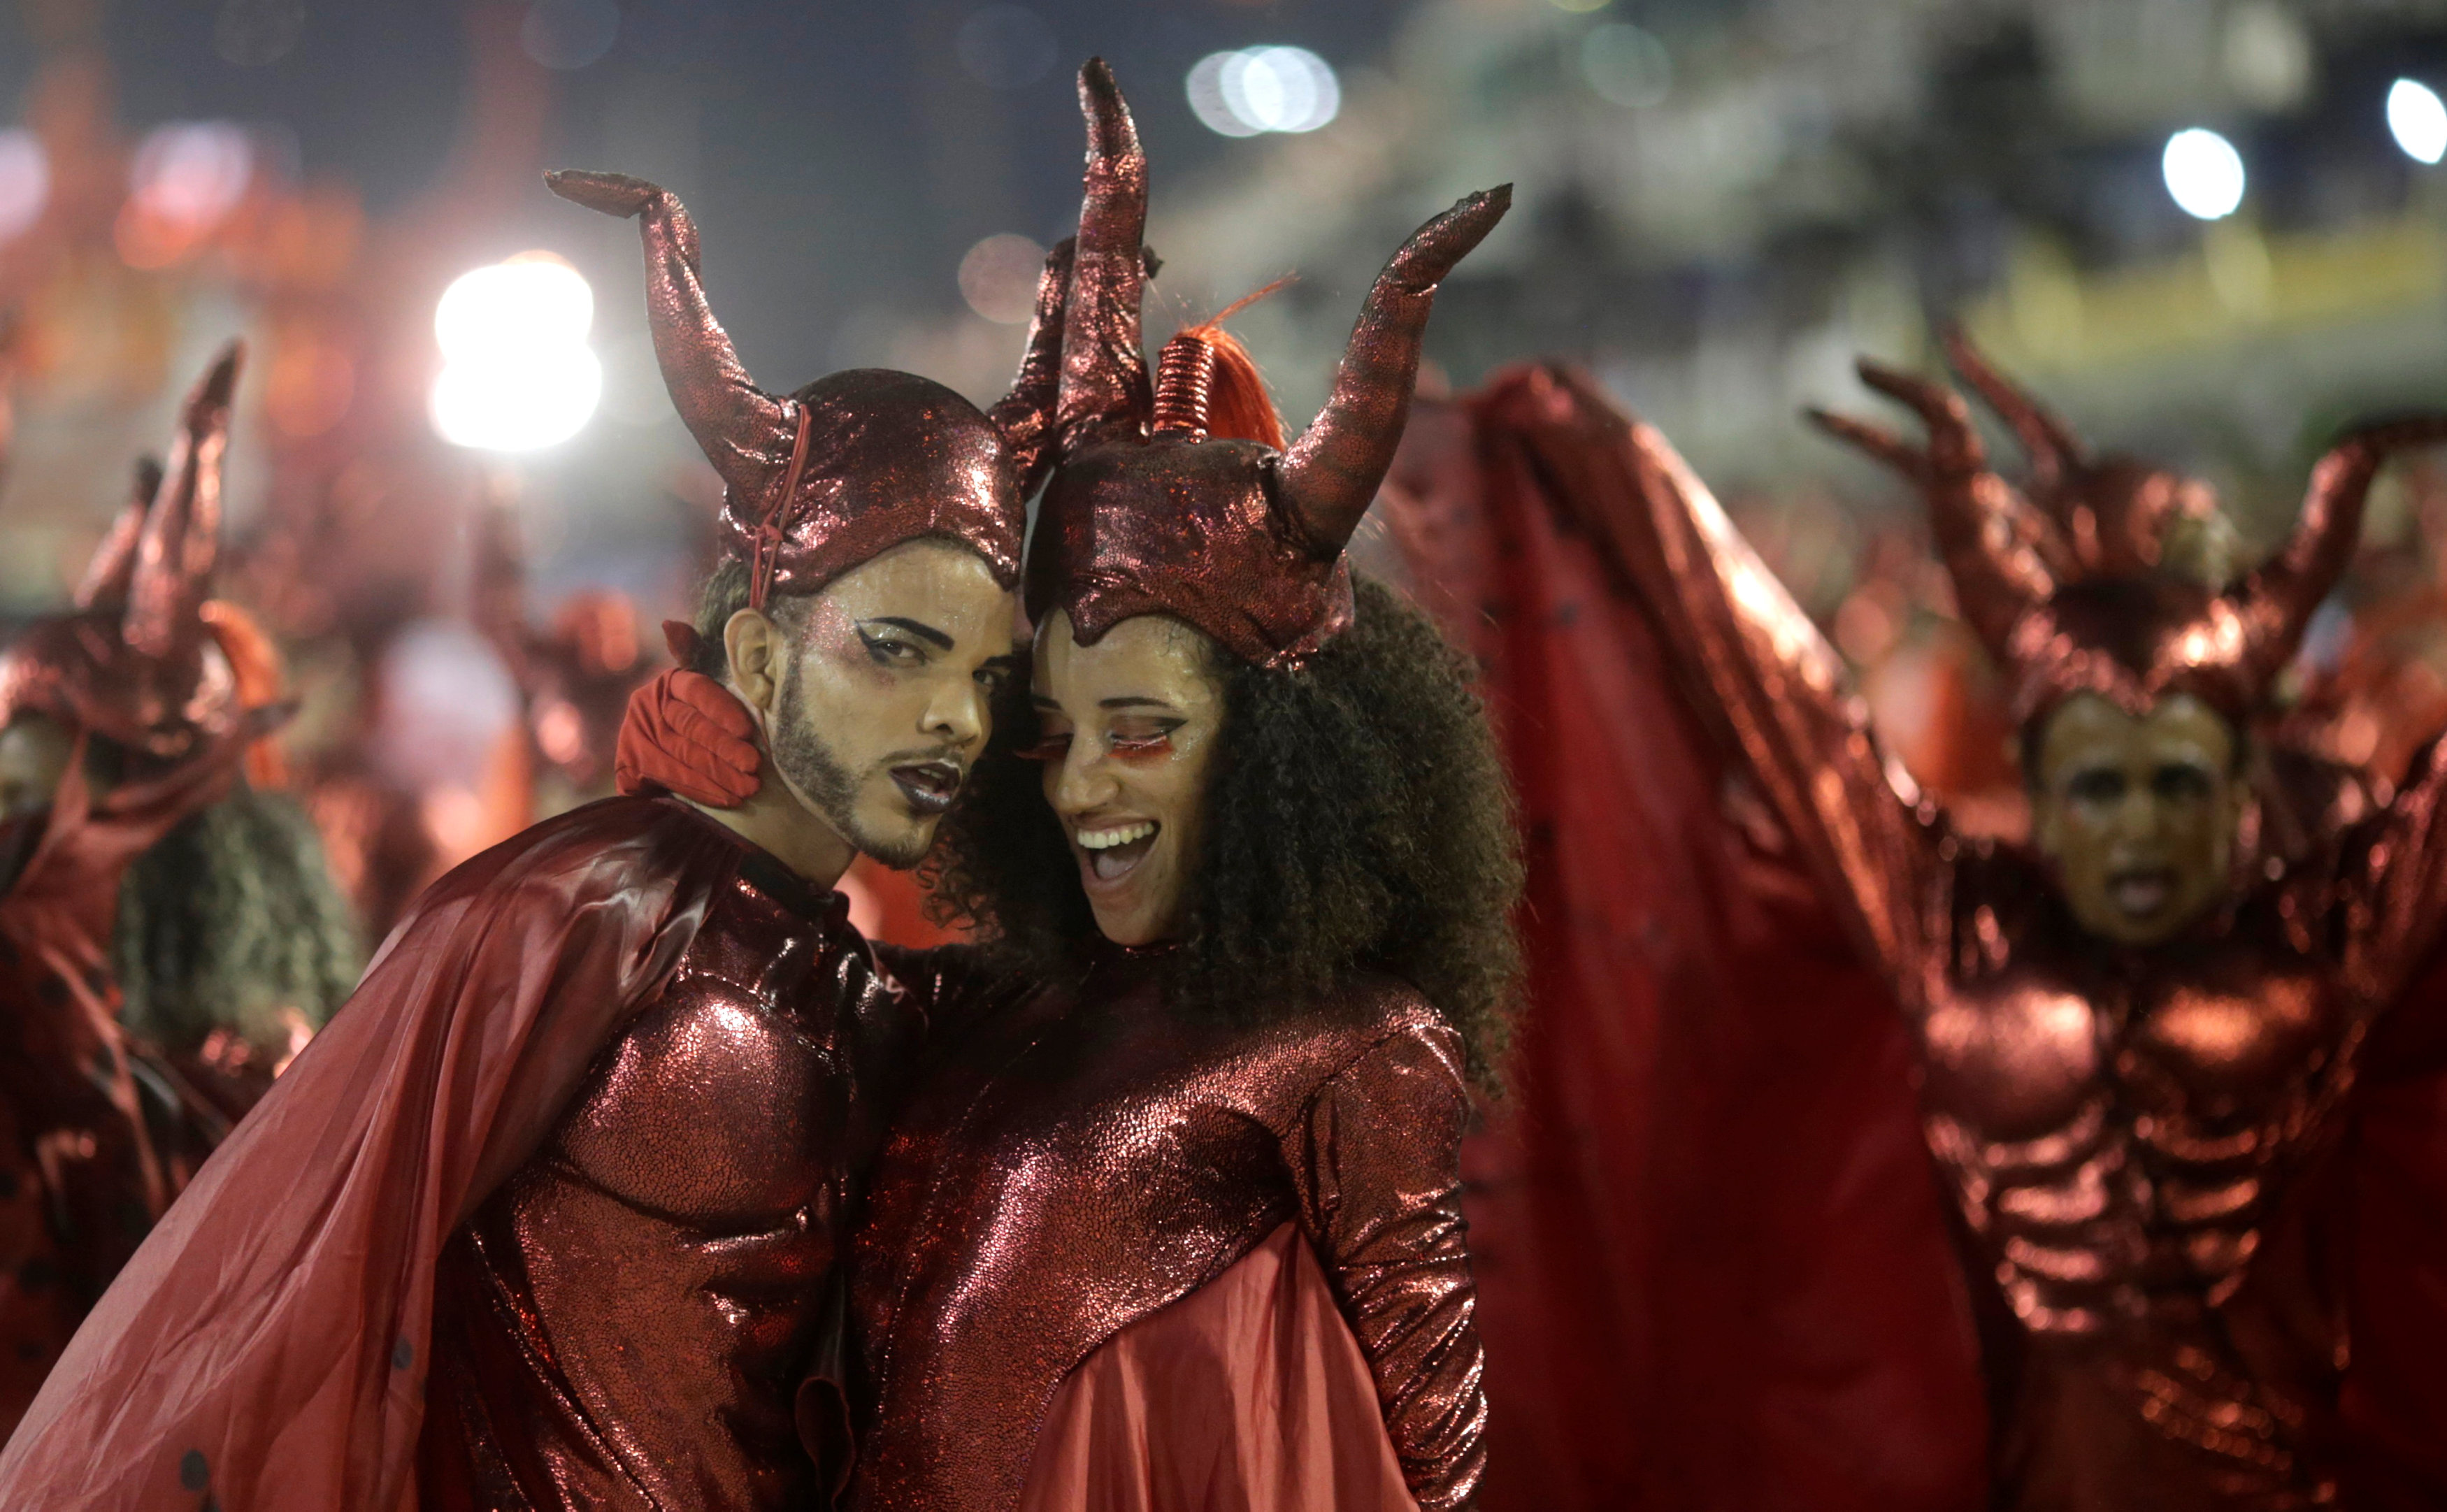 شباب يرتدون زى يتشبه بالشيطان فى لون أحمر خلال كرنفال البرازيل الشعبى لإحياء رقصة السامبا